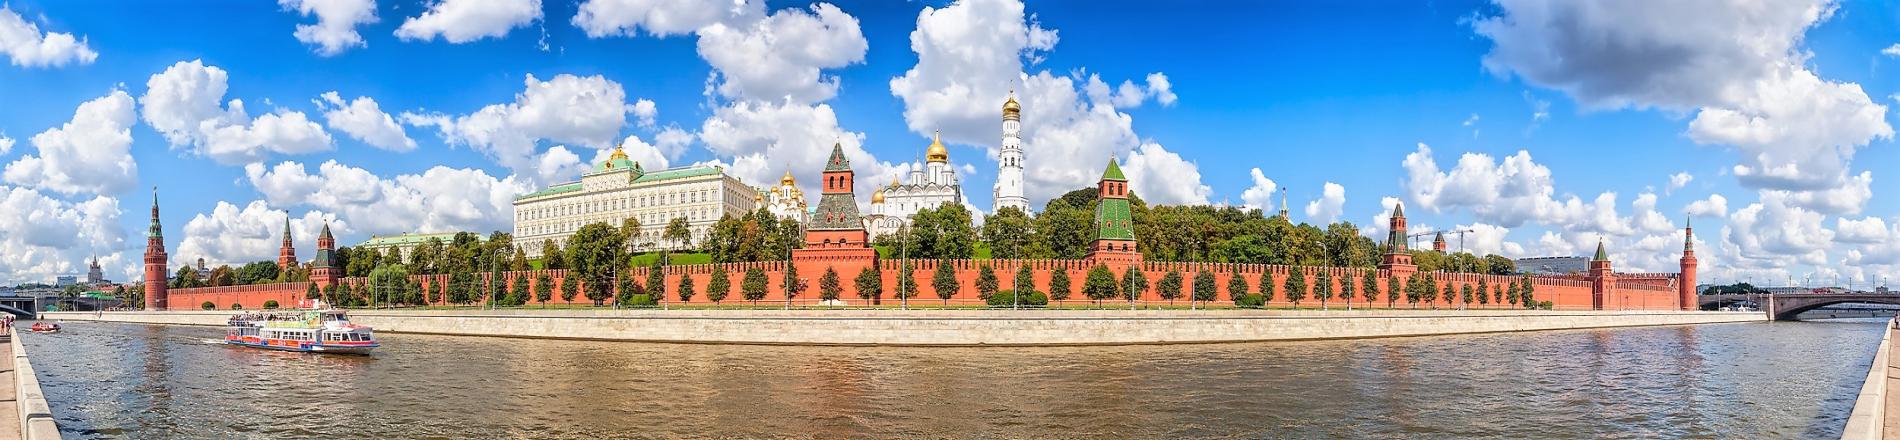 Moskva i St. Peterburg - nekoliko zanimljivih crtica